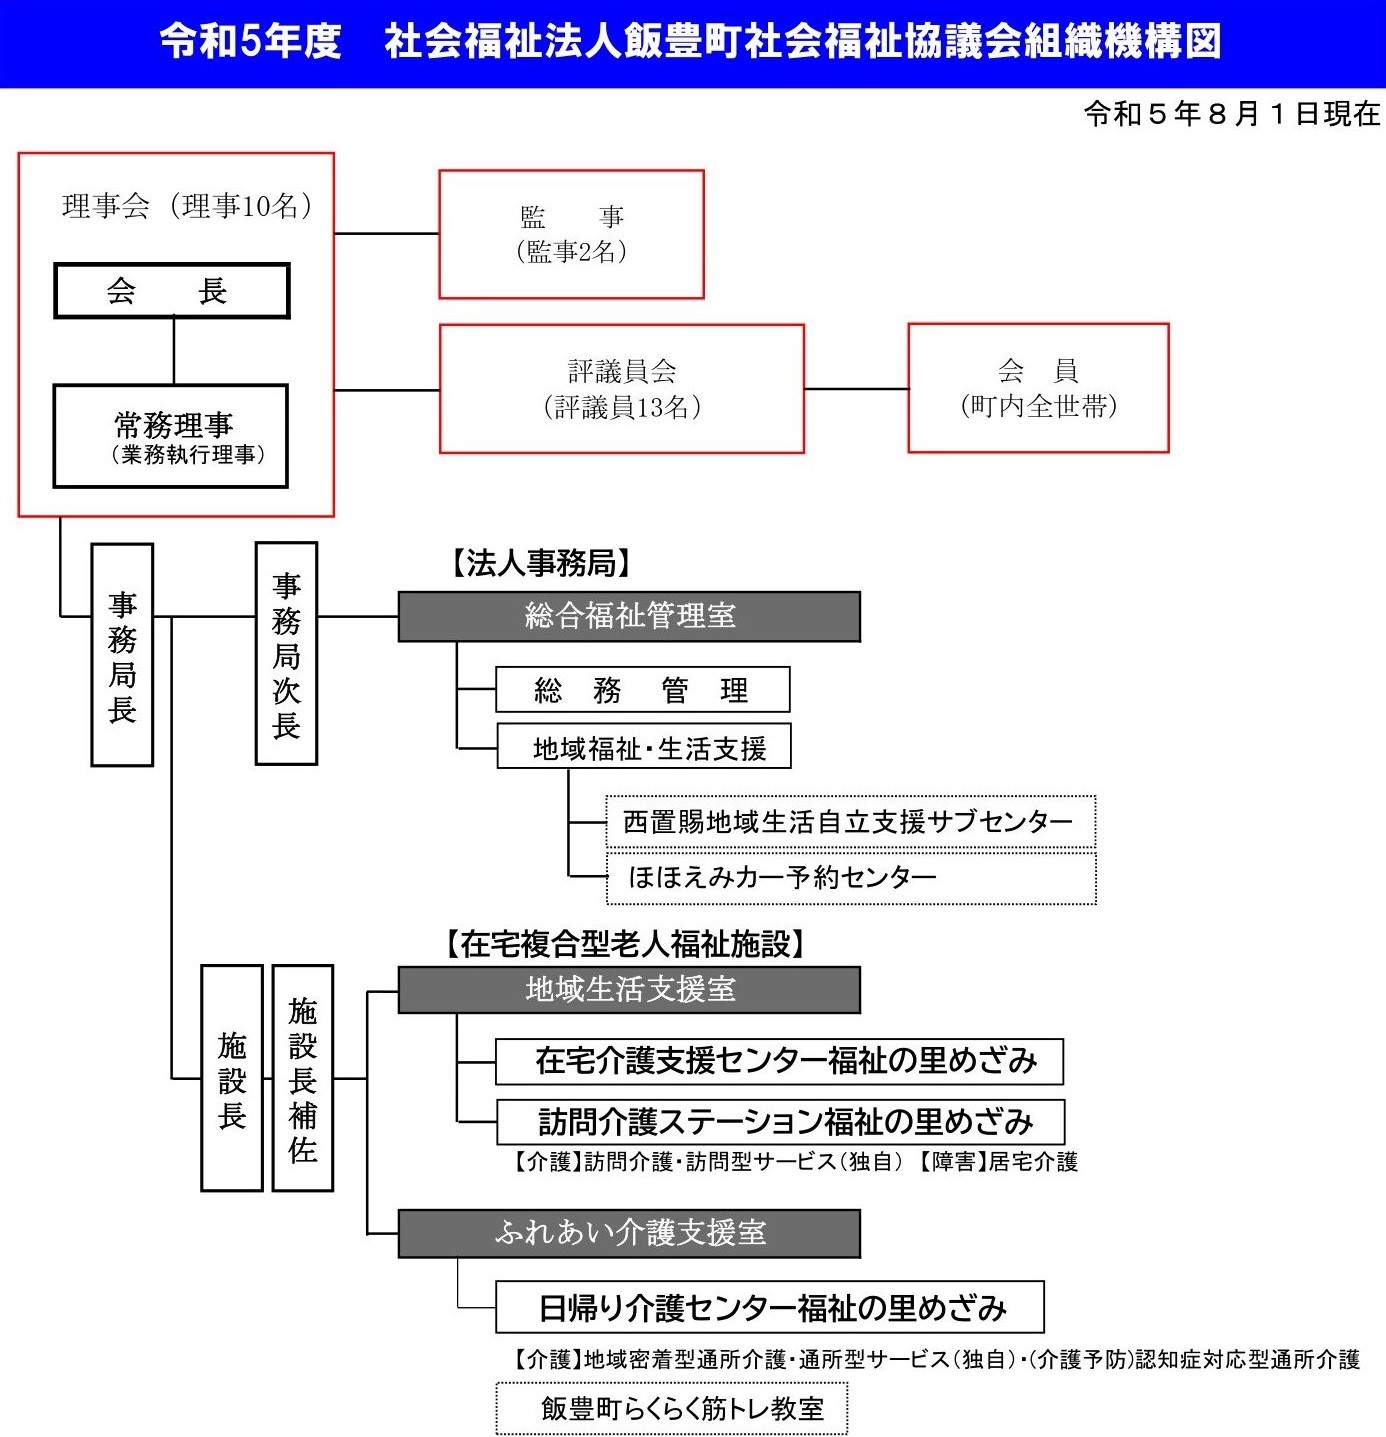 飯豊町社会福祉協議会組織機構図